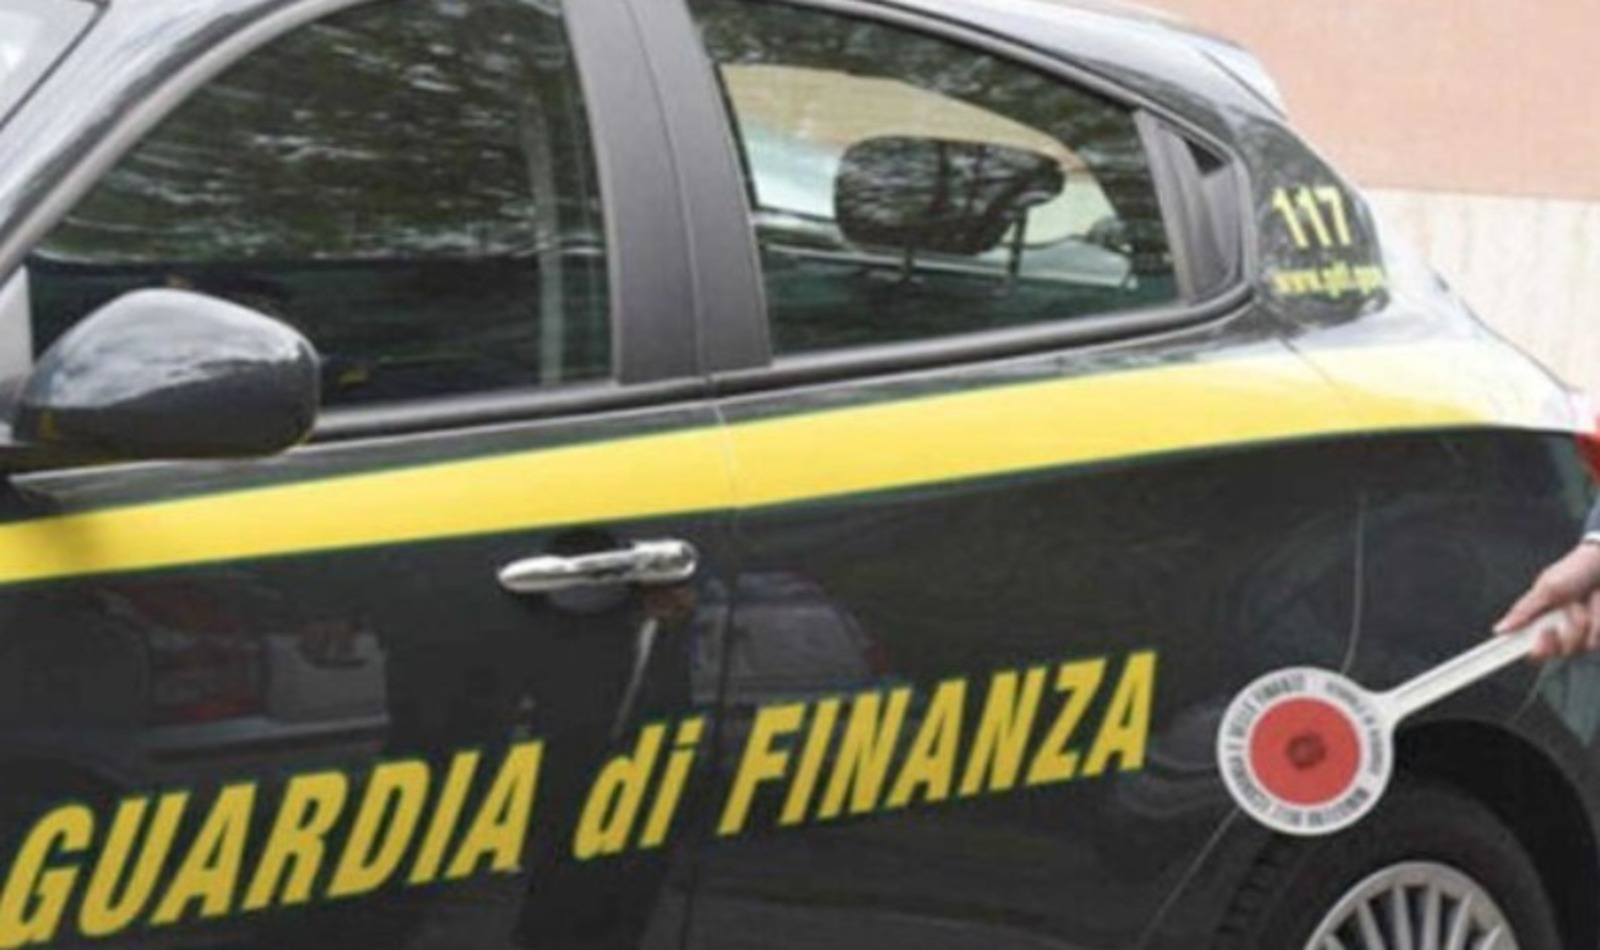 Guardia di Finanza per arresto due imprenditori romani